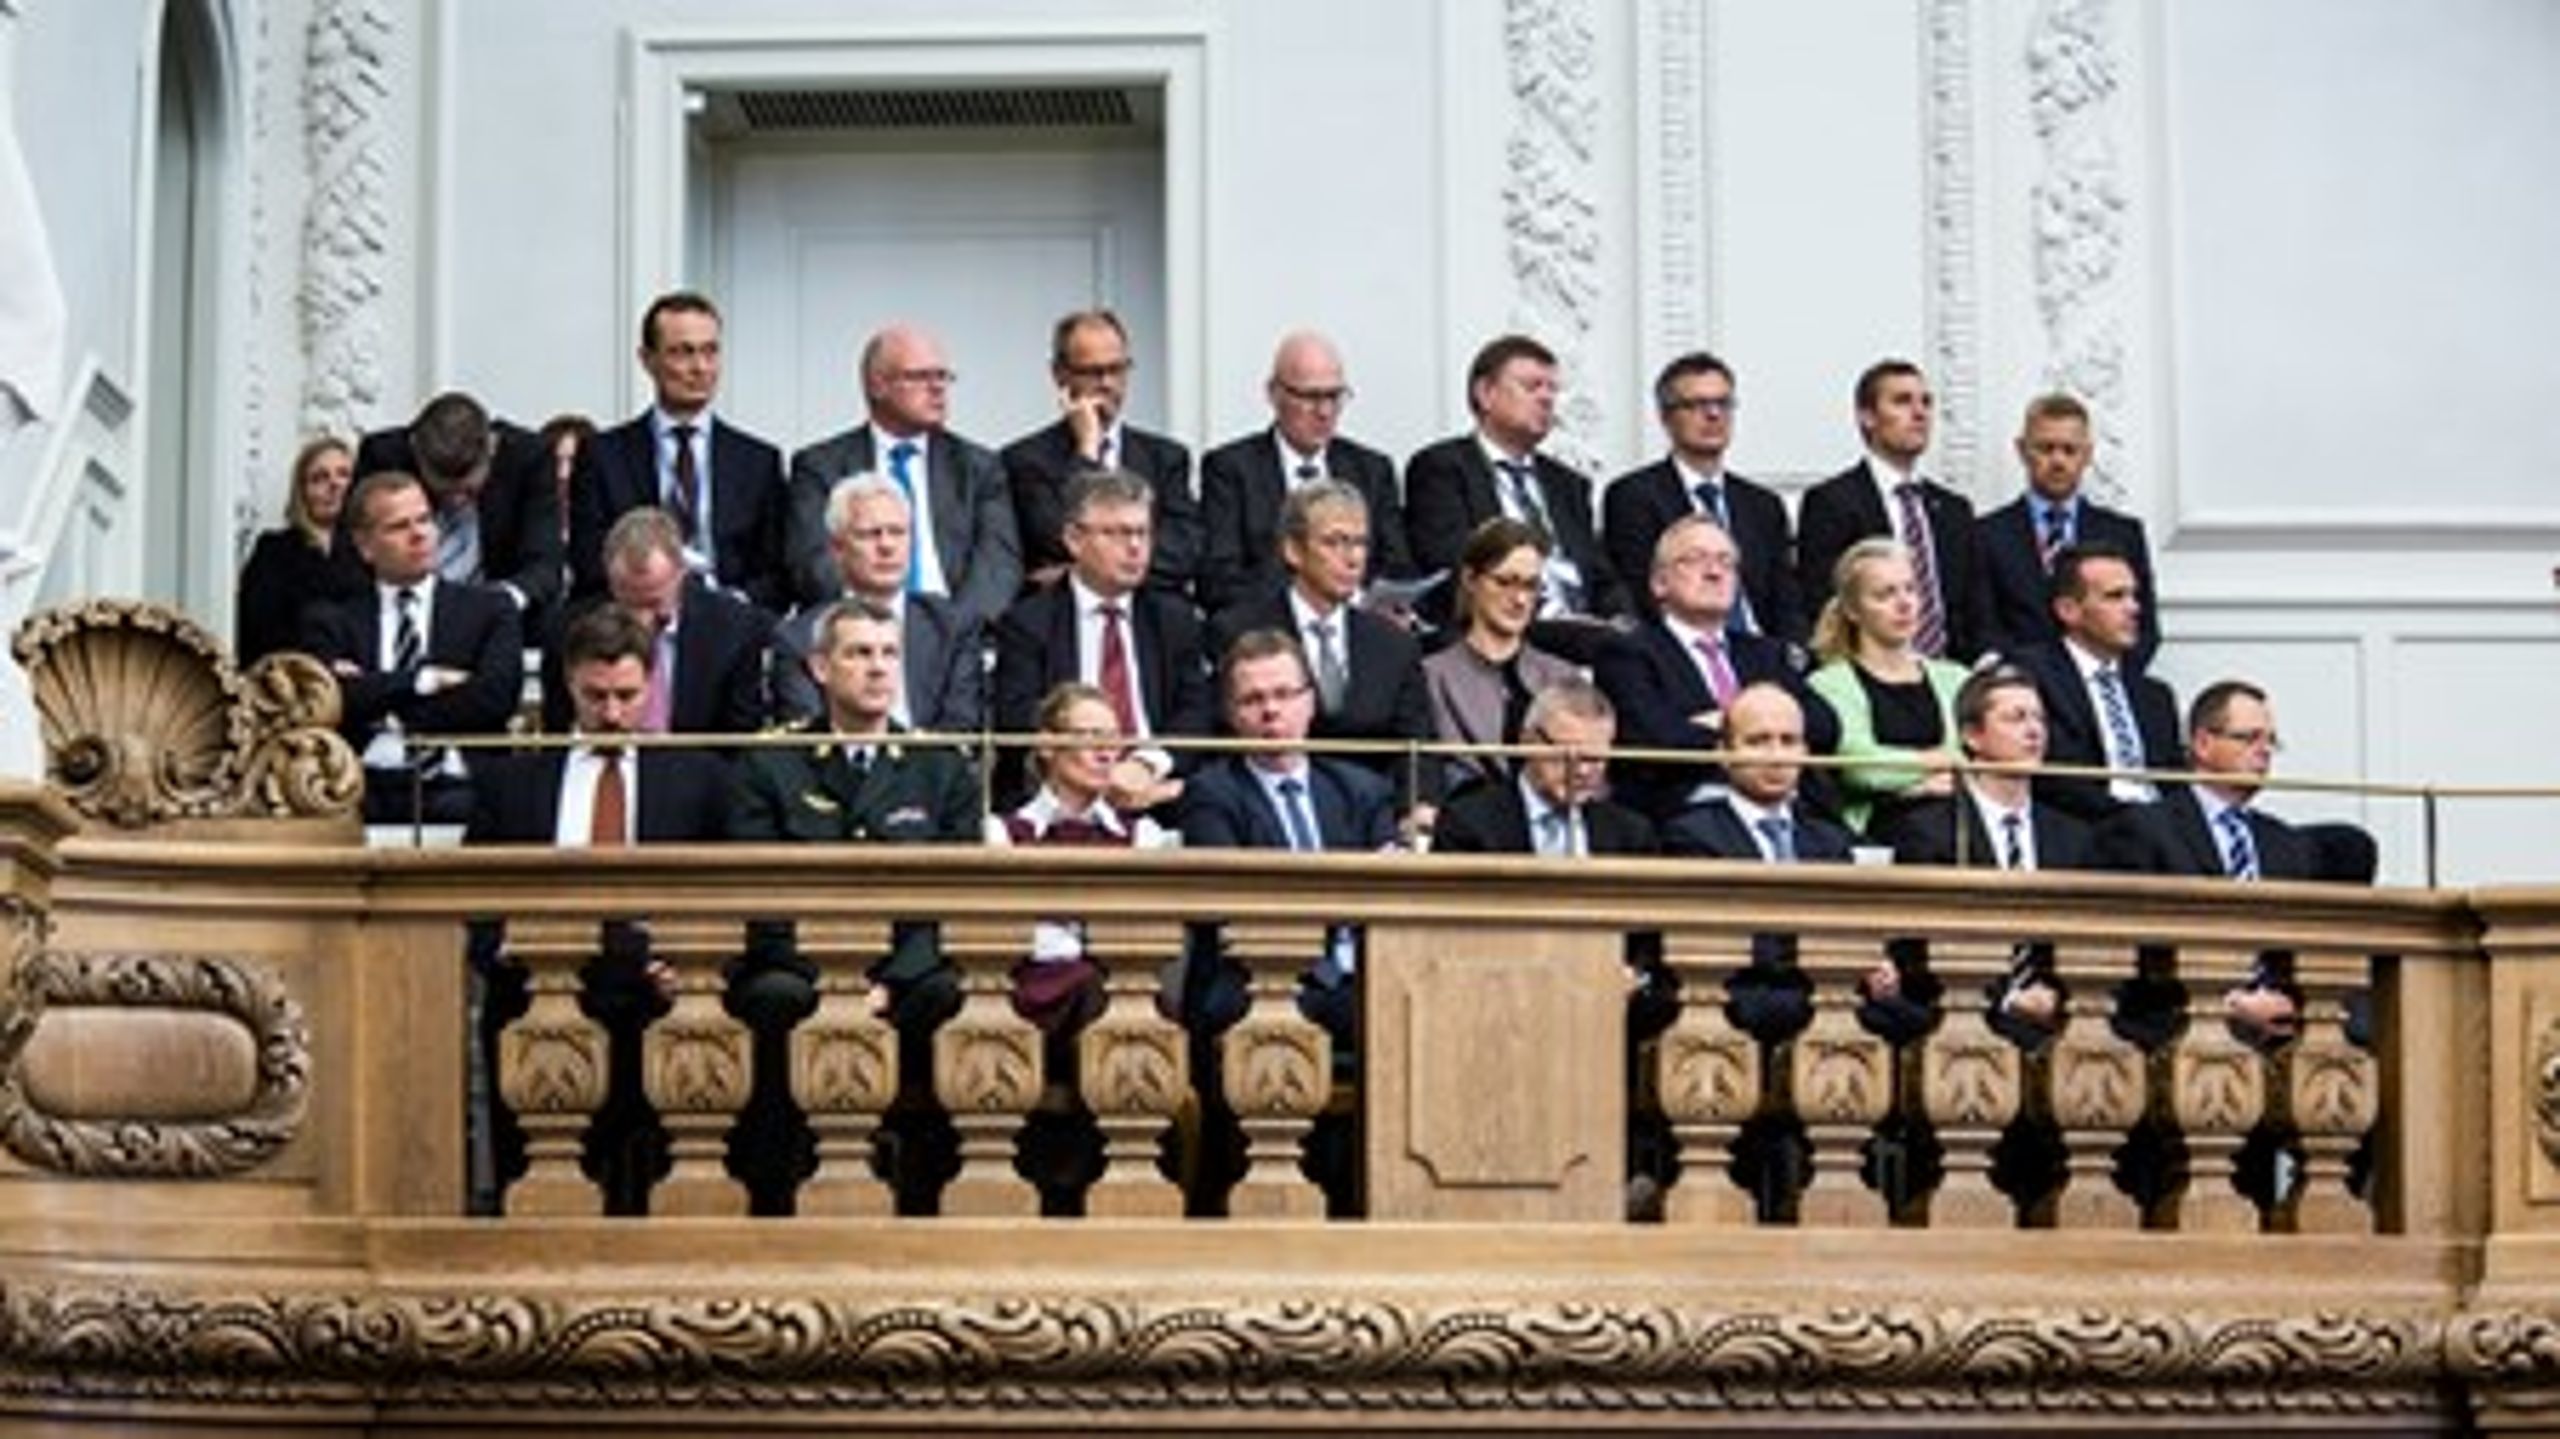 Departementscheferne ved Folketingets åbning 2014